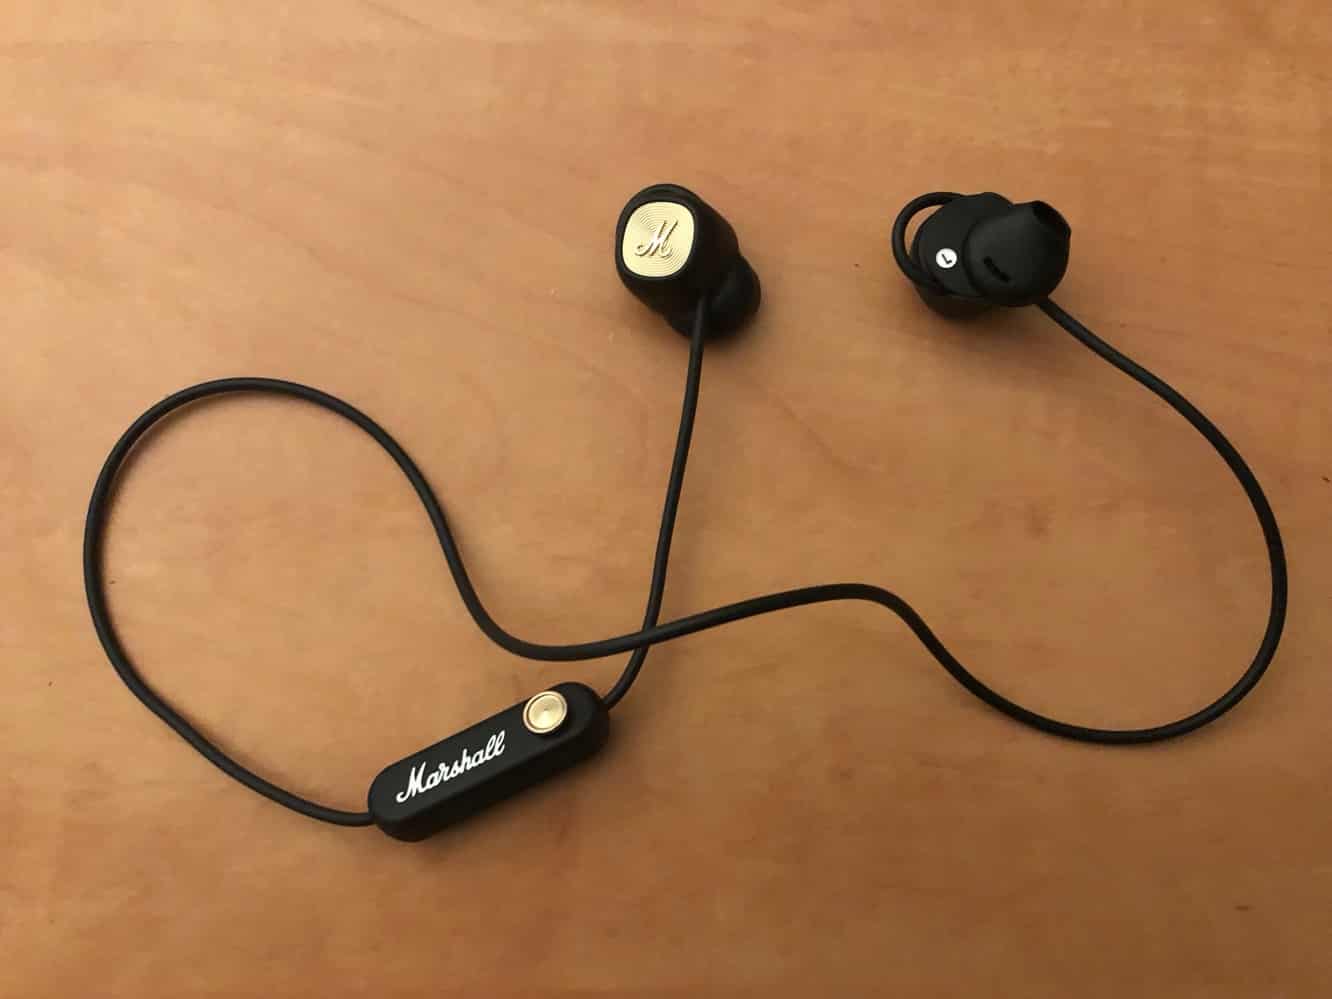 İnceleme: Marshall Minor II Bluetooth Kulak İçi Kulaklıklar